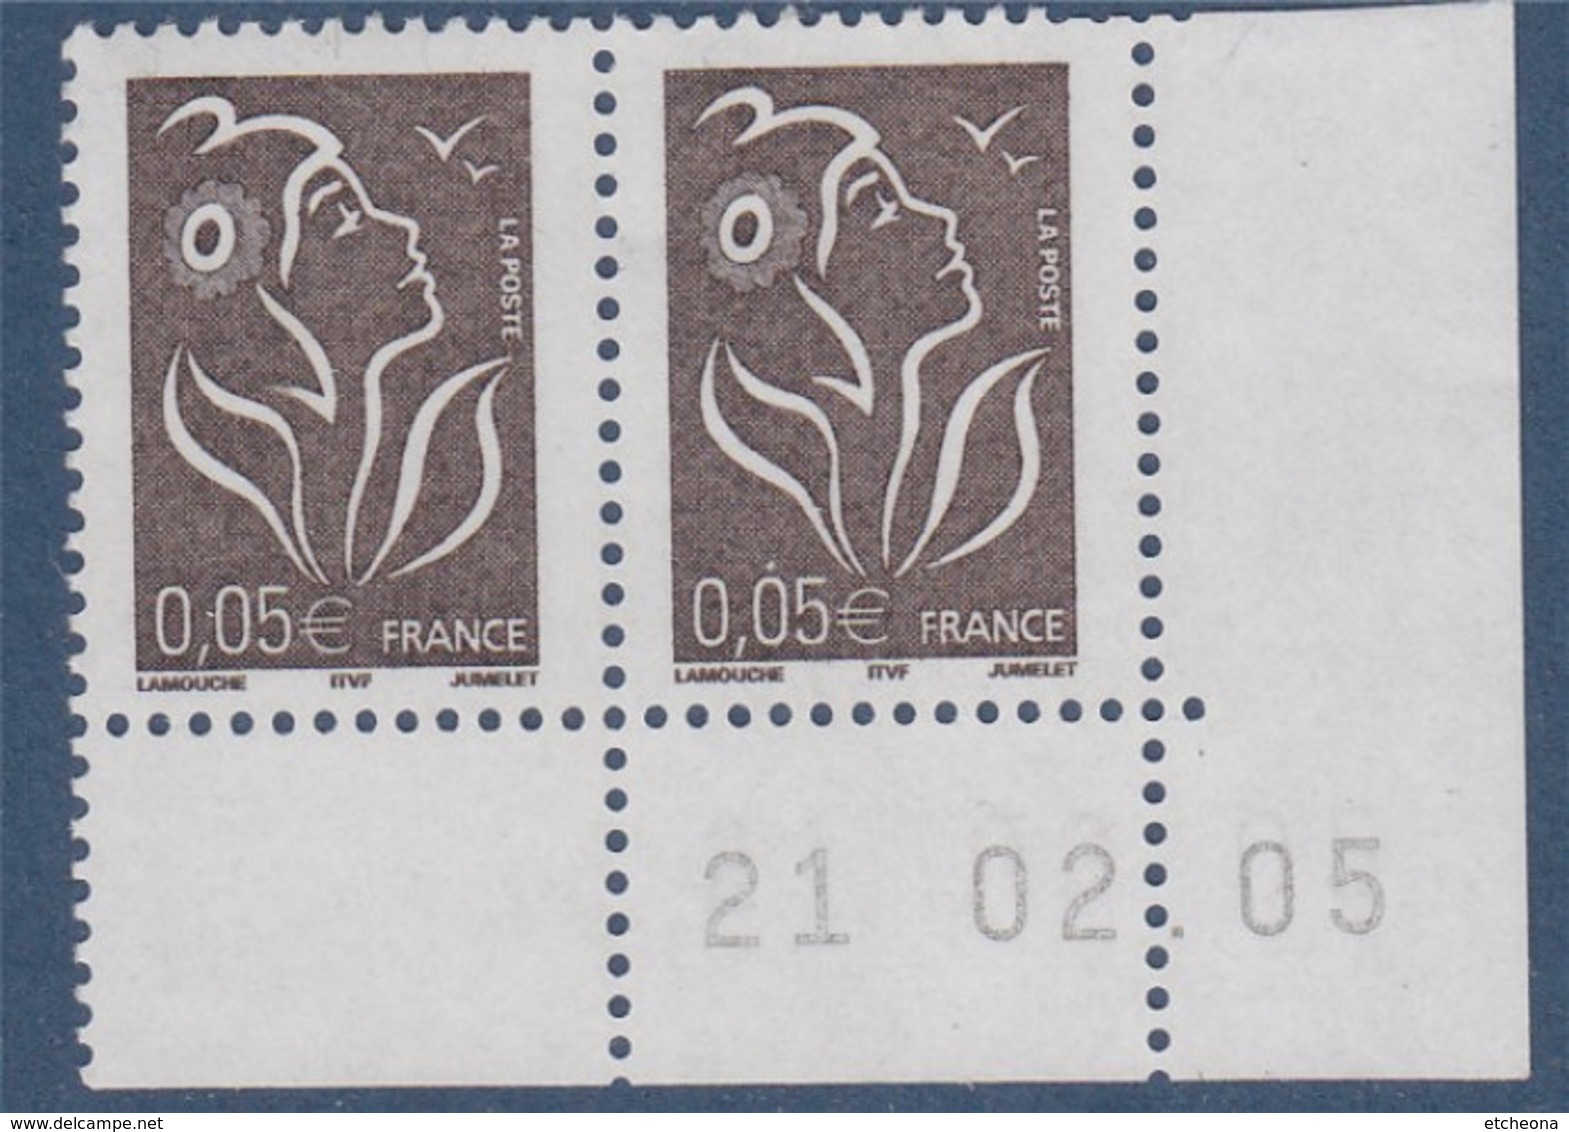 Lamouche 0.05€ Paire N°3754 Neuf En Coin De Feuille Daté 21.2.05 ITVF - 2004-2008 Marianne Of Lamouche